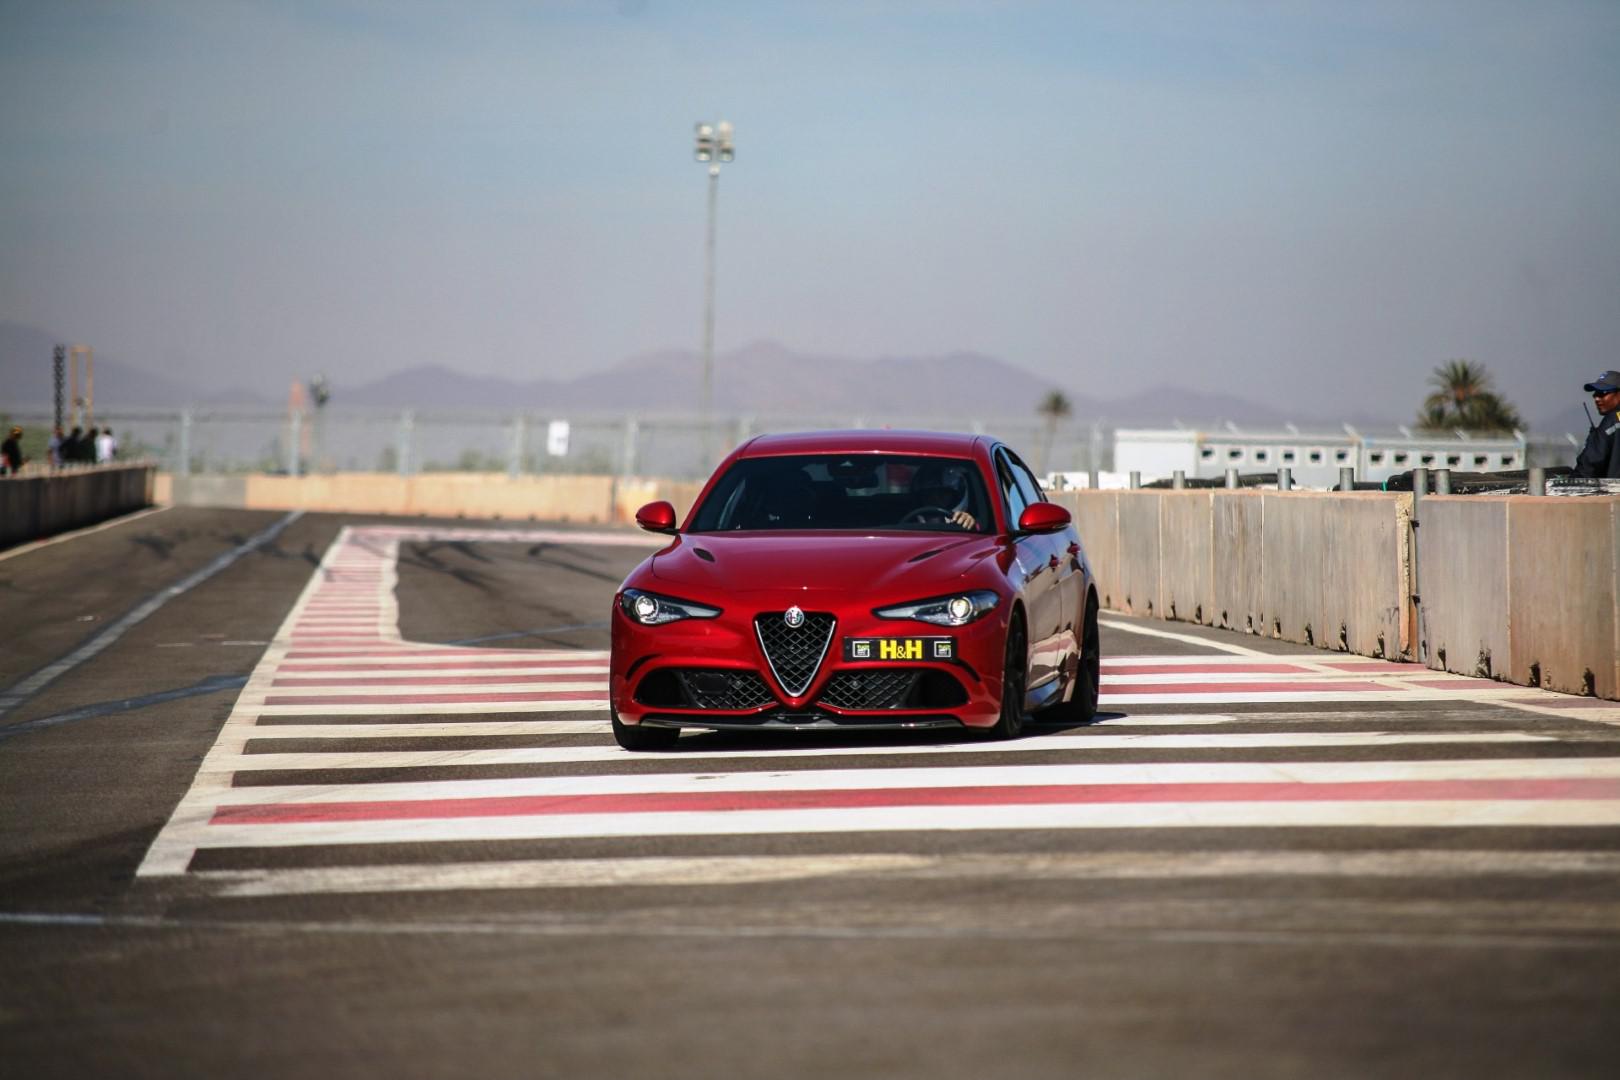 Essai Vérité : l’Alfa Romeo Guilia Quadrifoglio : 1000 km de route + 30 tours de pistes = 100% d’émotion